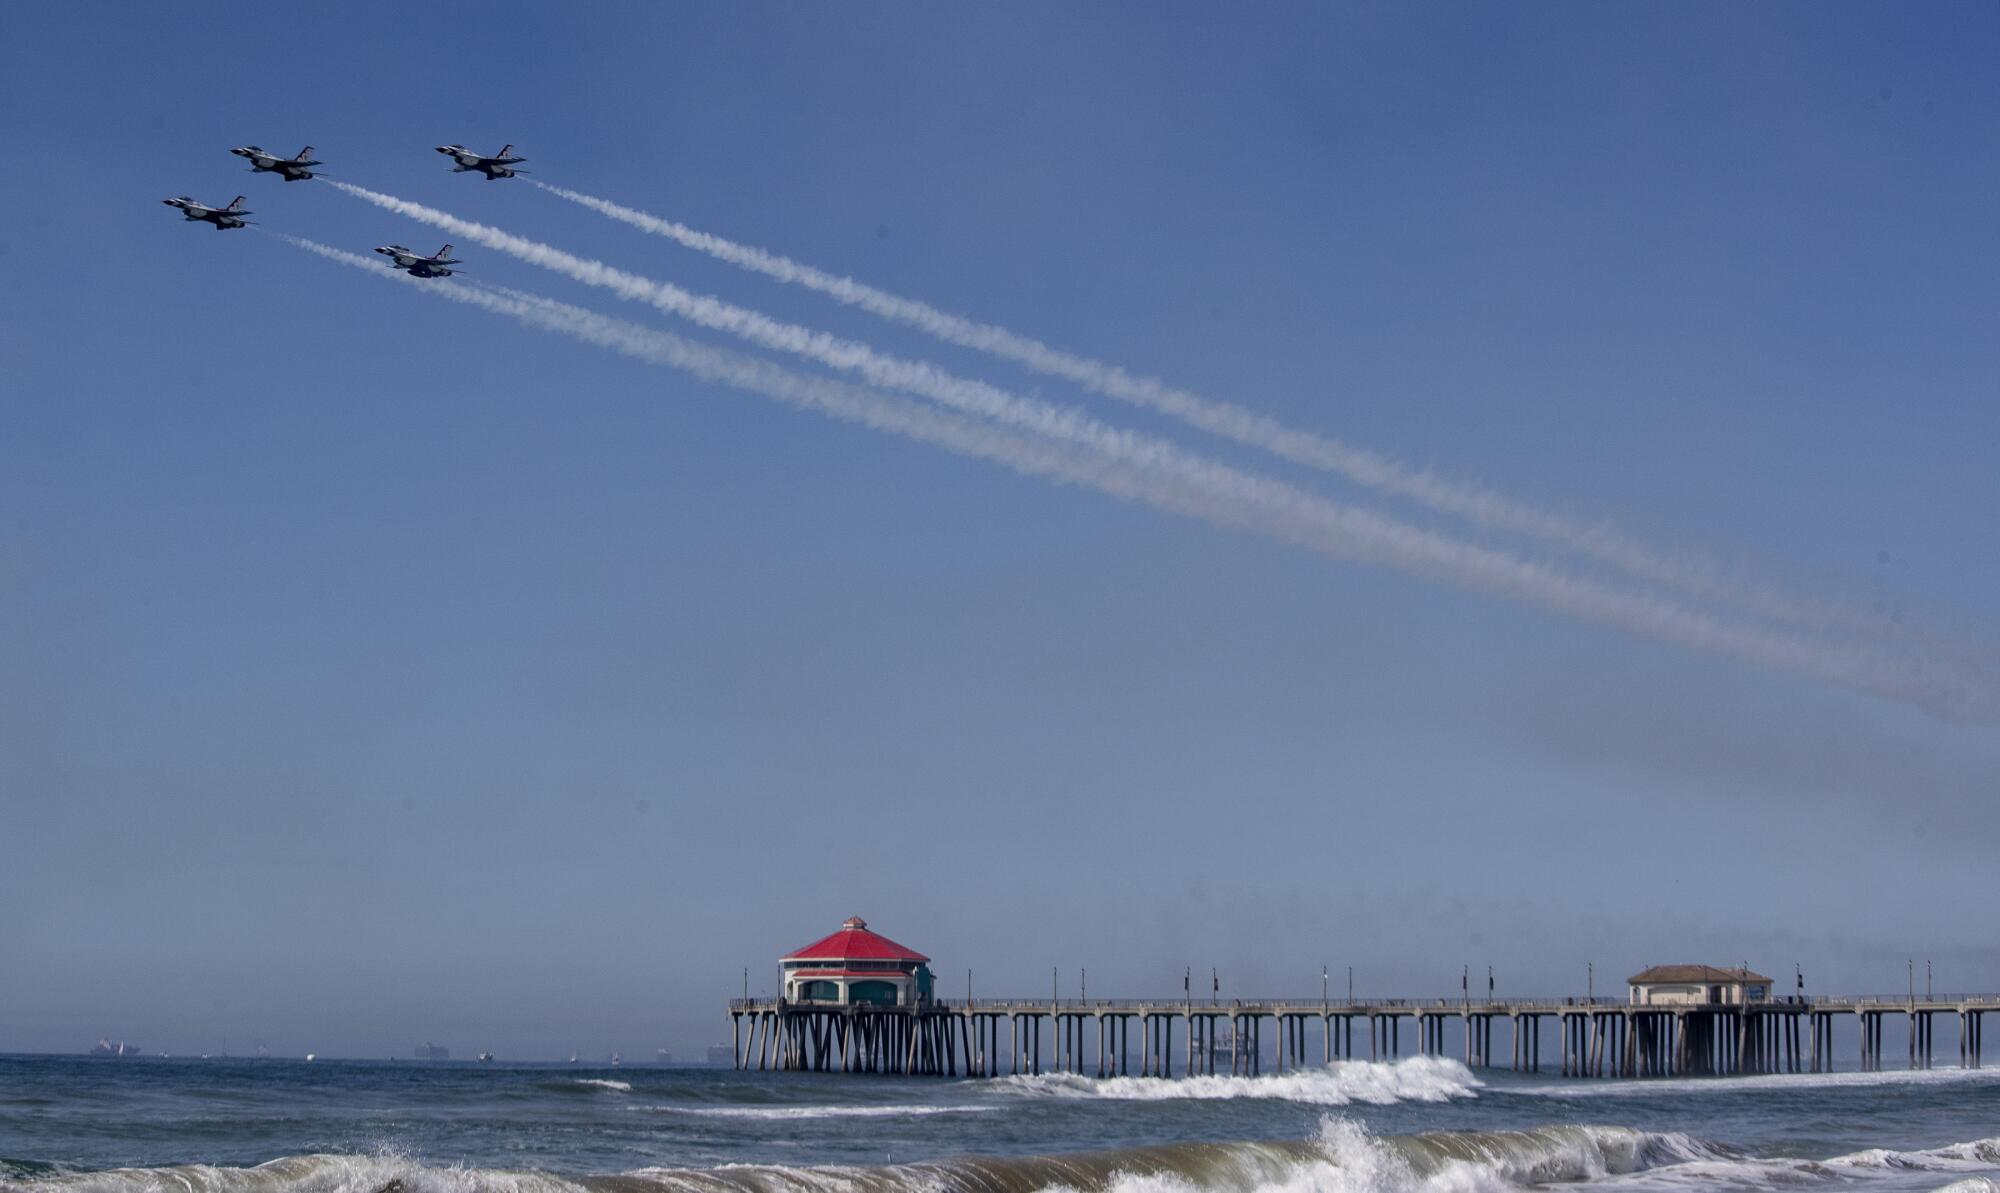  U.S. Air Force Thunderbirds streak across the sky